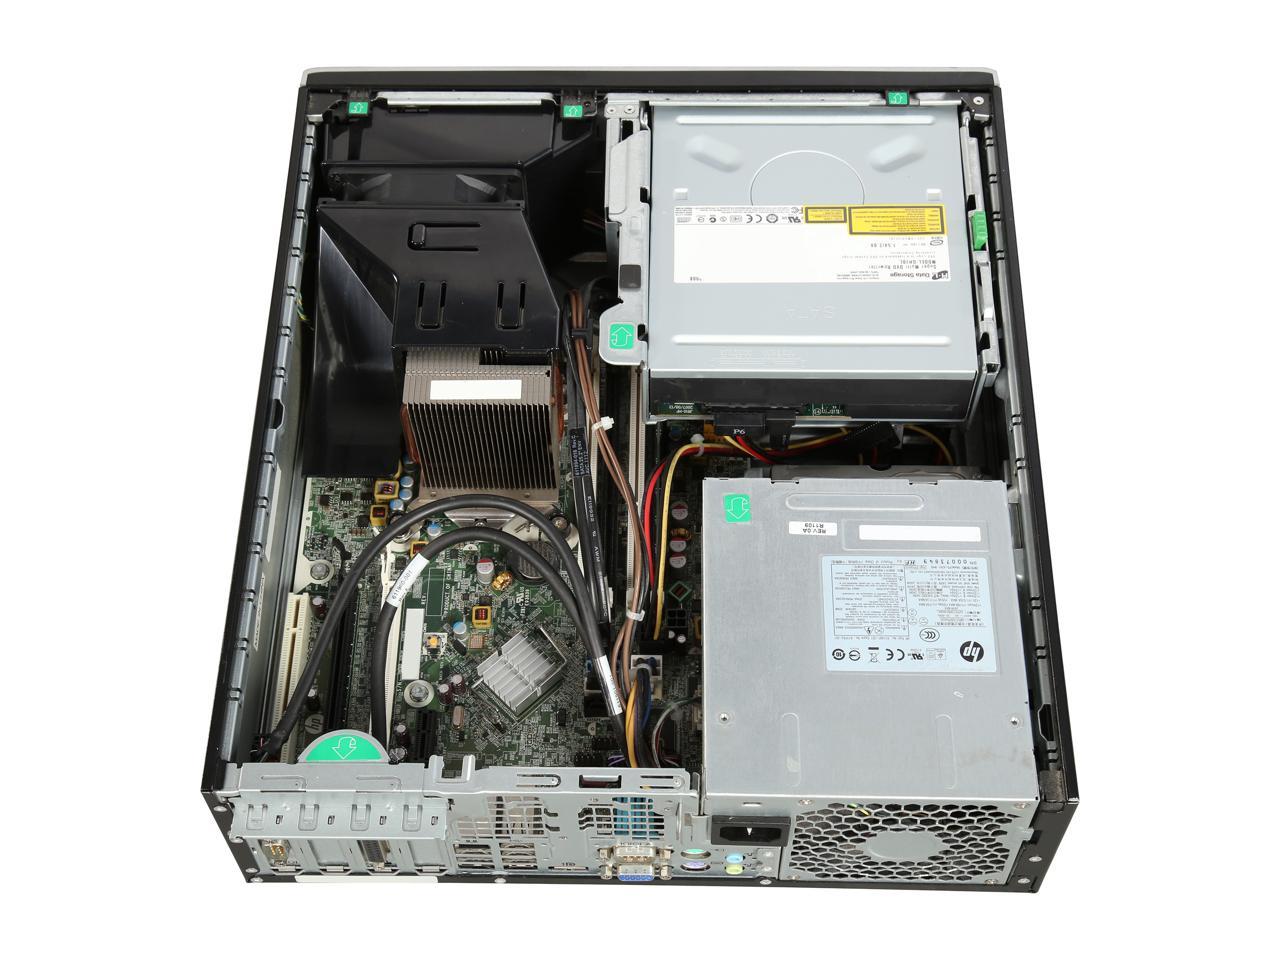 hp desktop computer 8200 intel core i5 2400